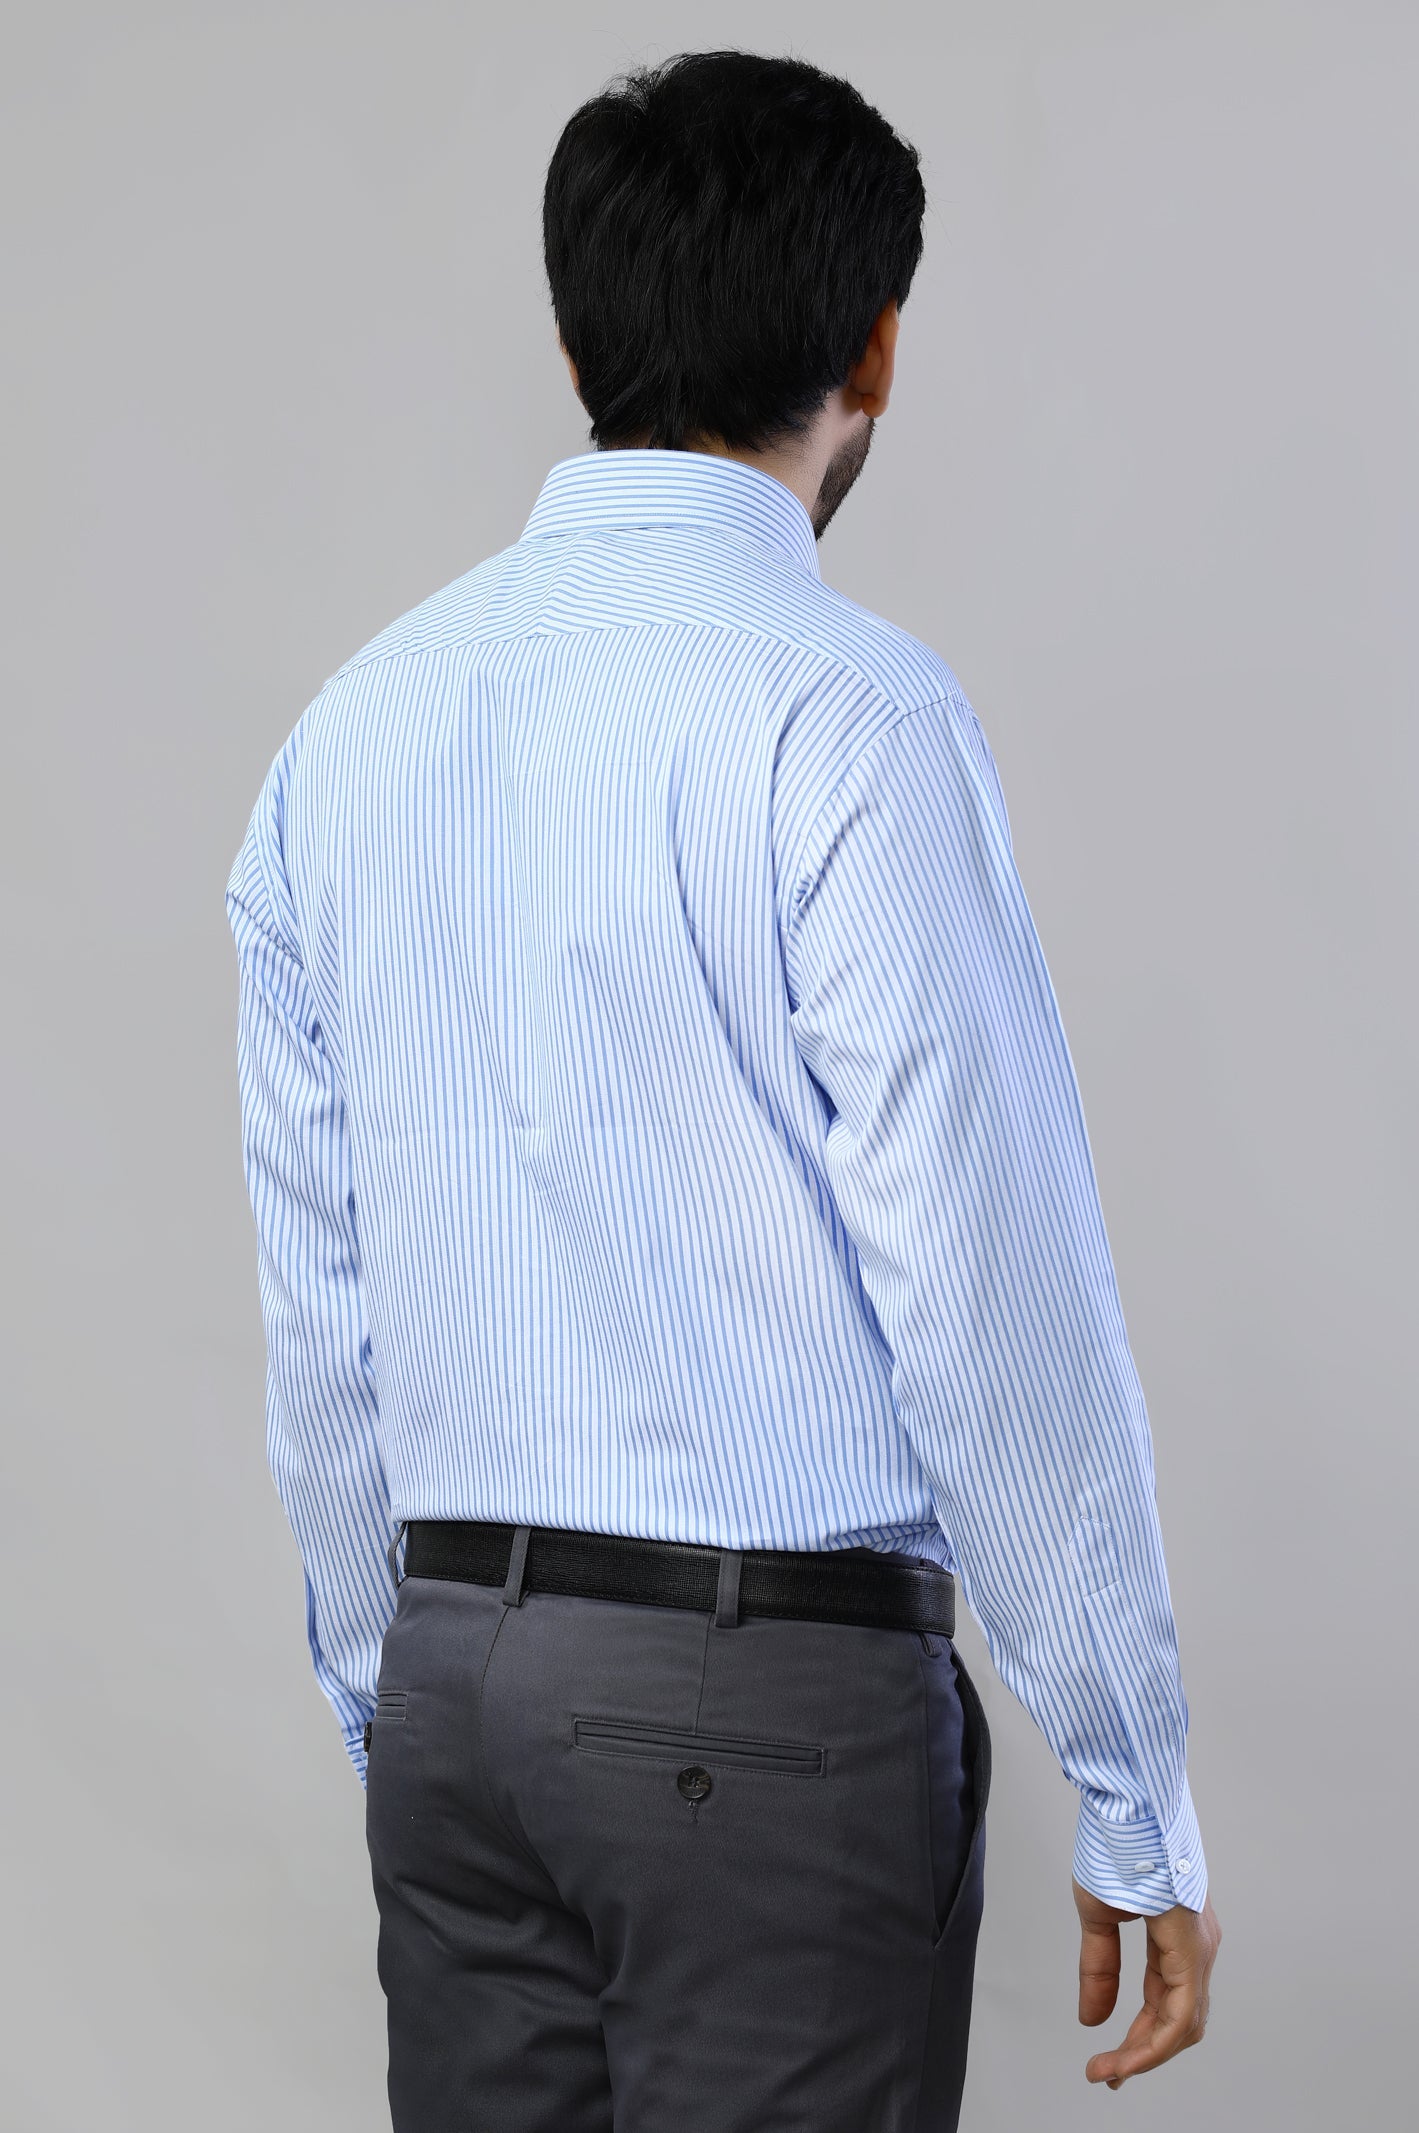 Light Blue Bengal Stripes Formal Shirt For Men - Diners